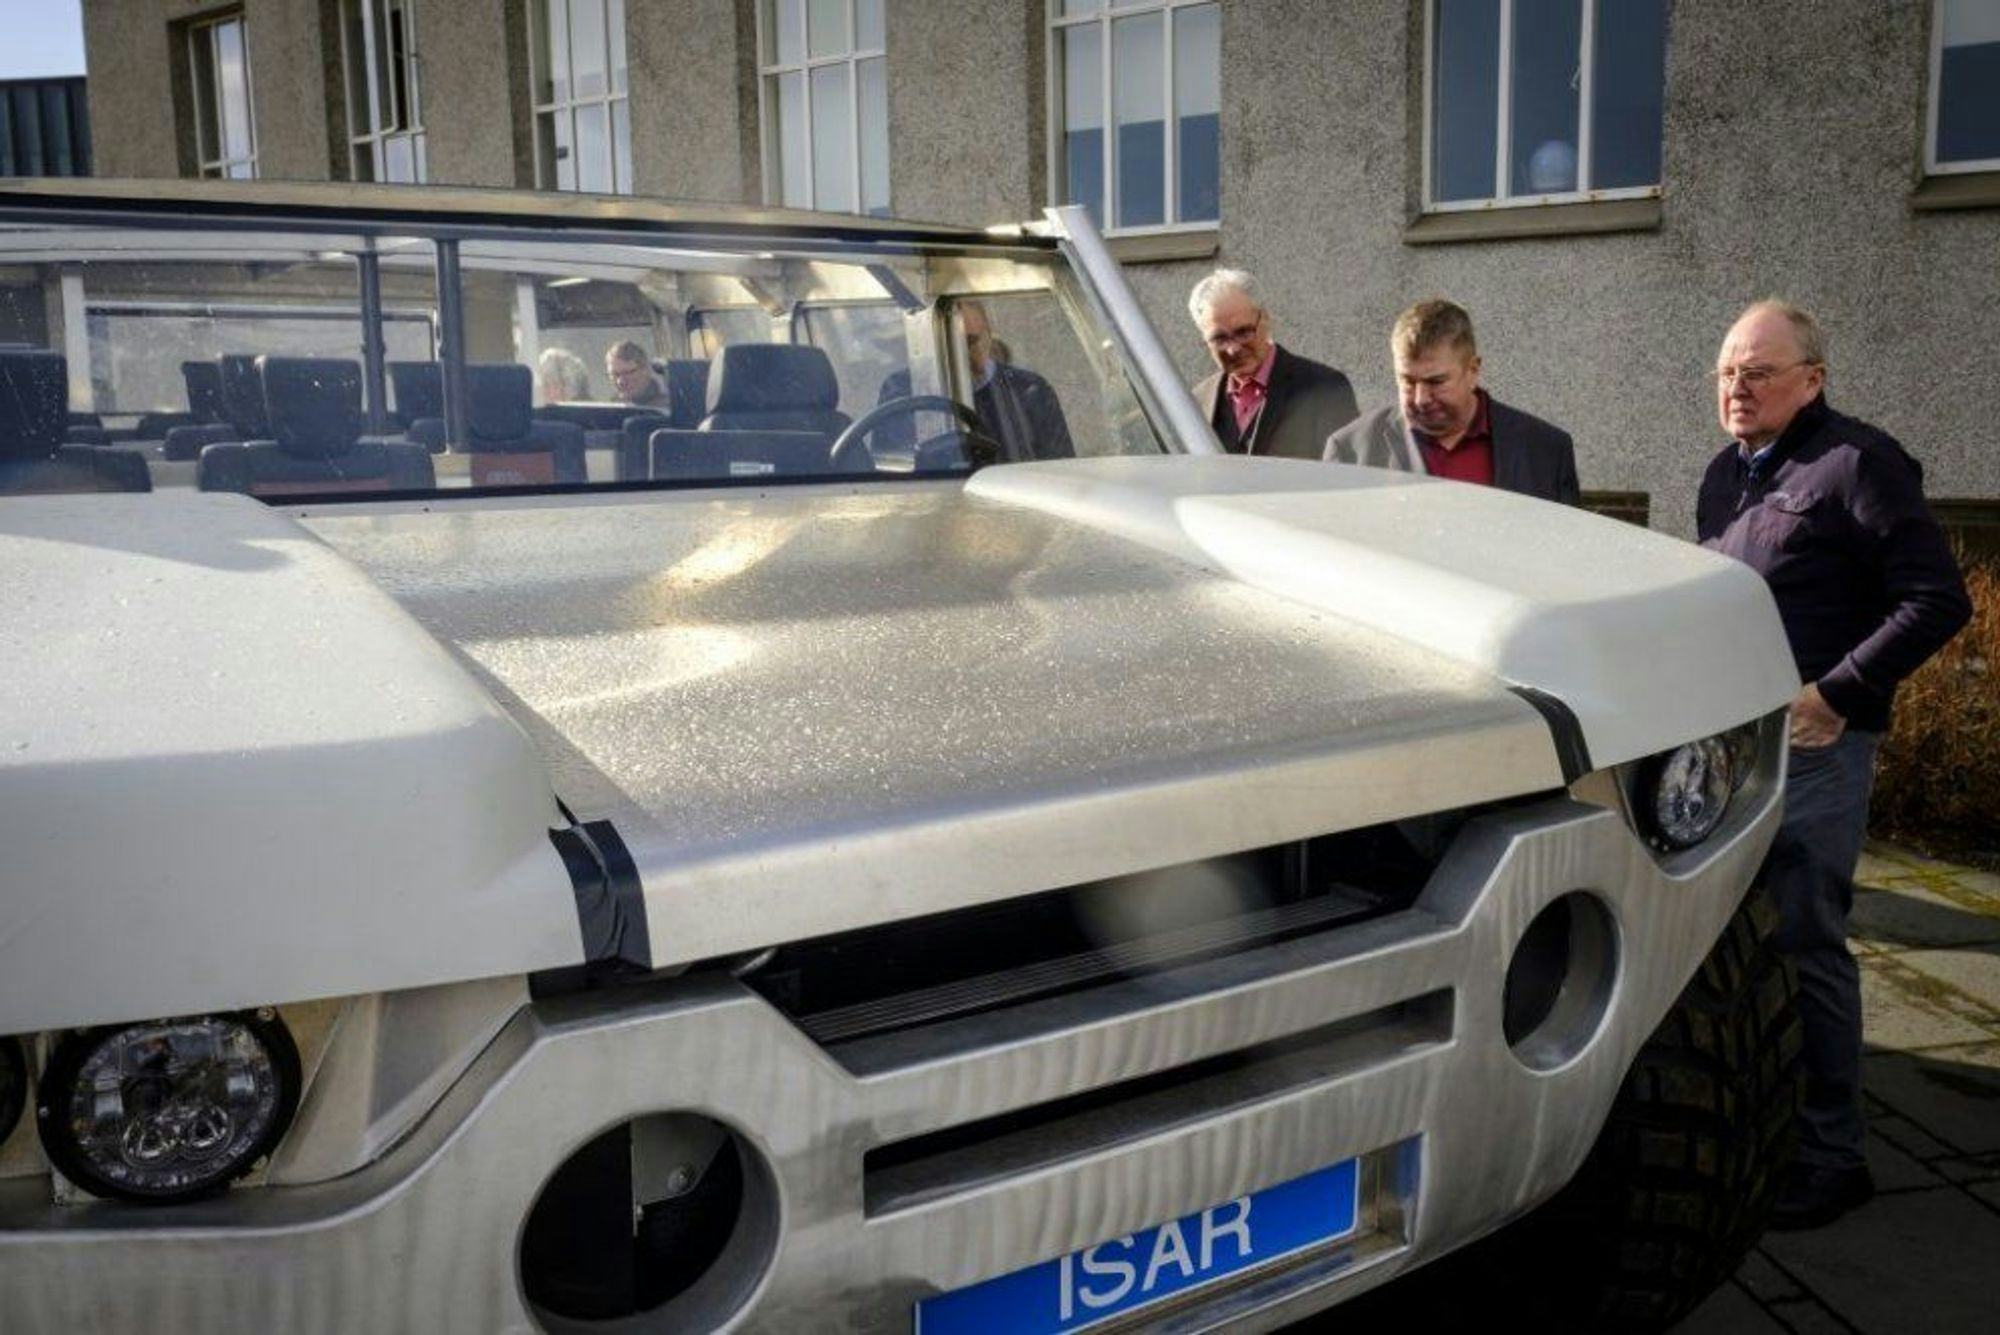 Three men examining a grey car with license plate "ISAR"